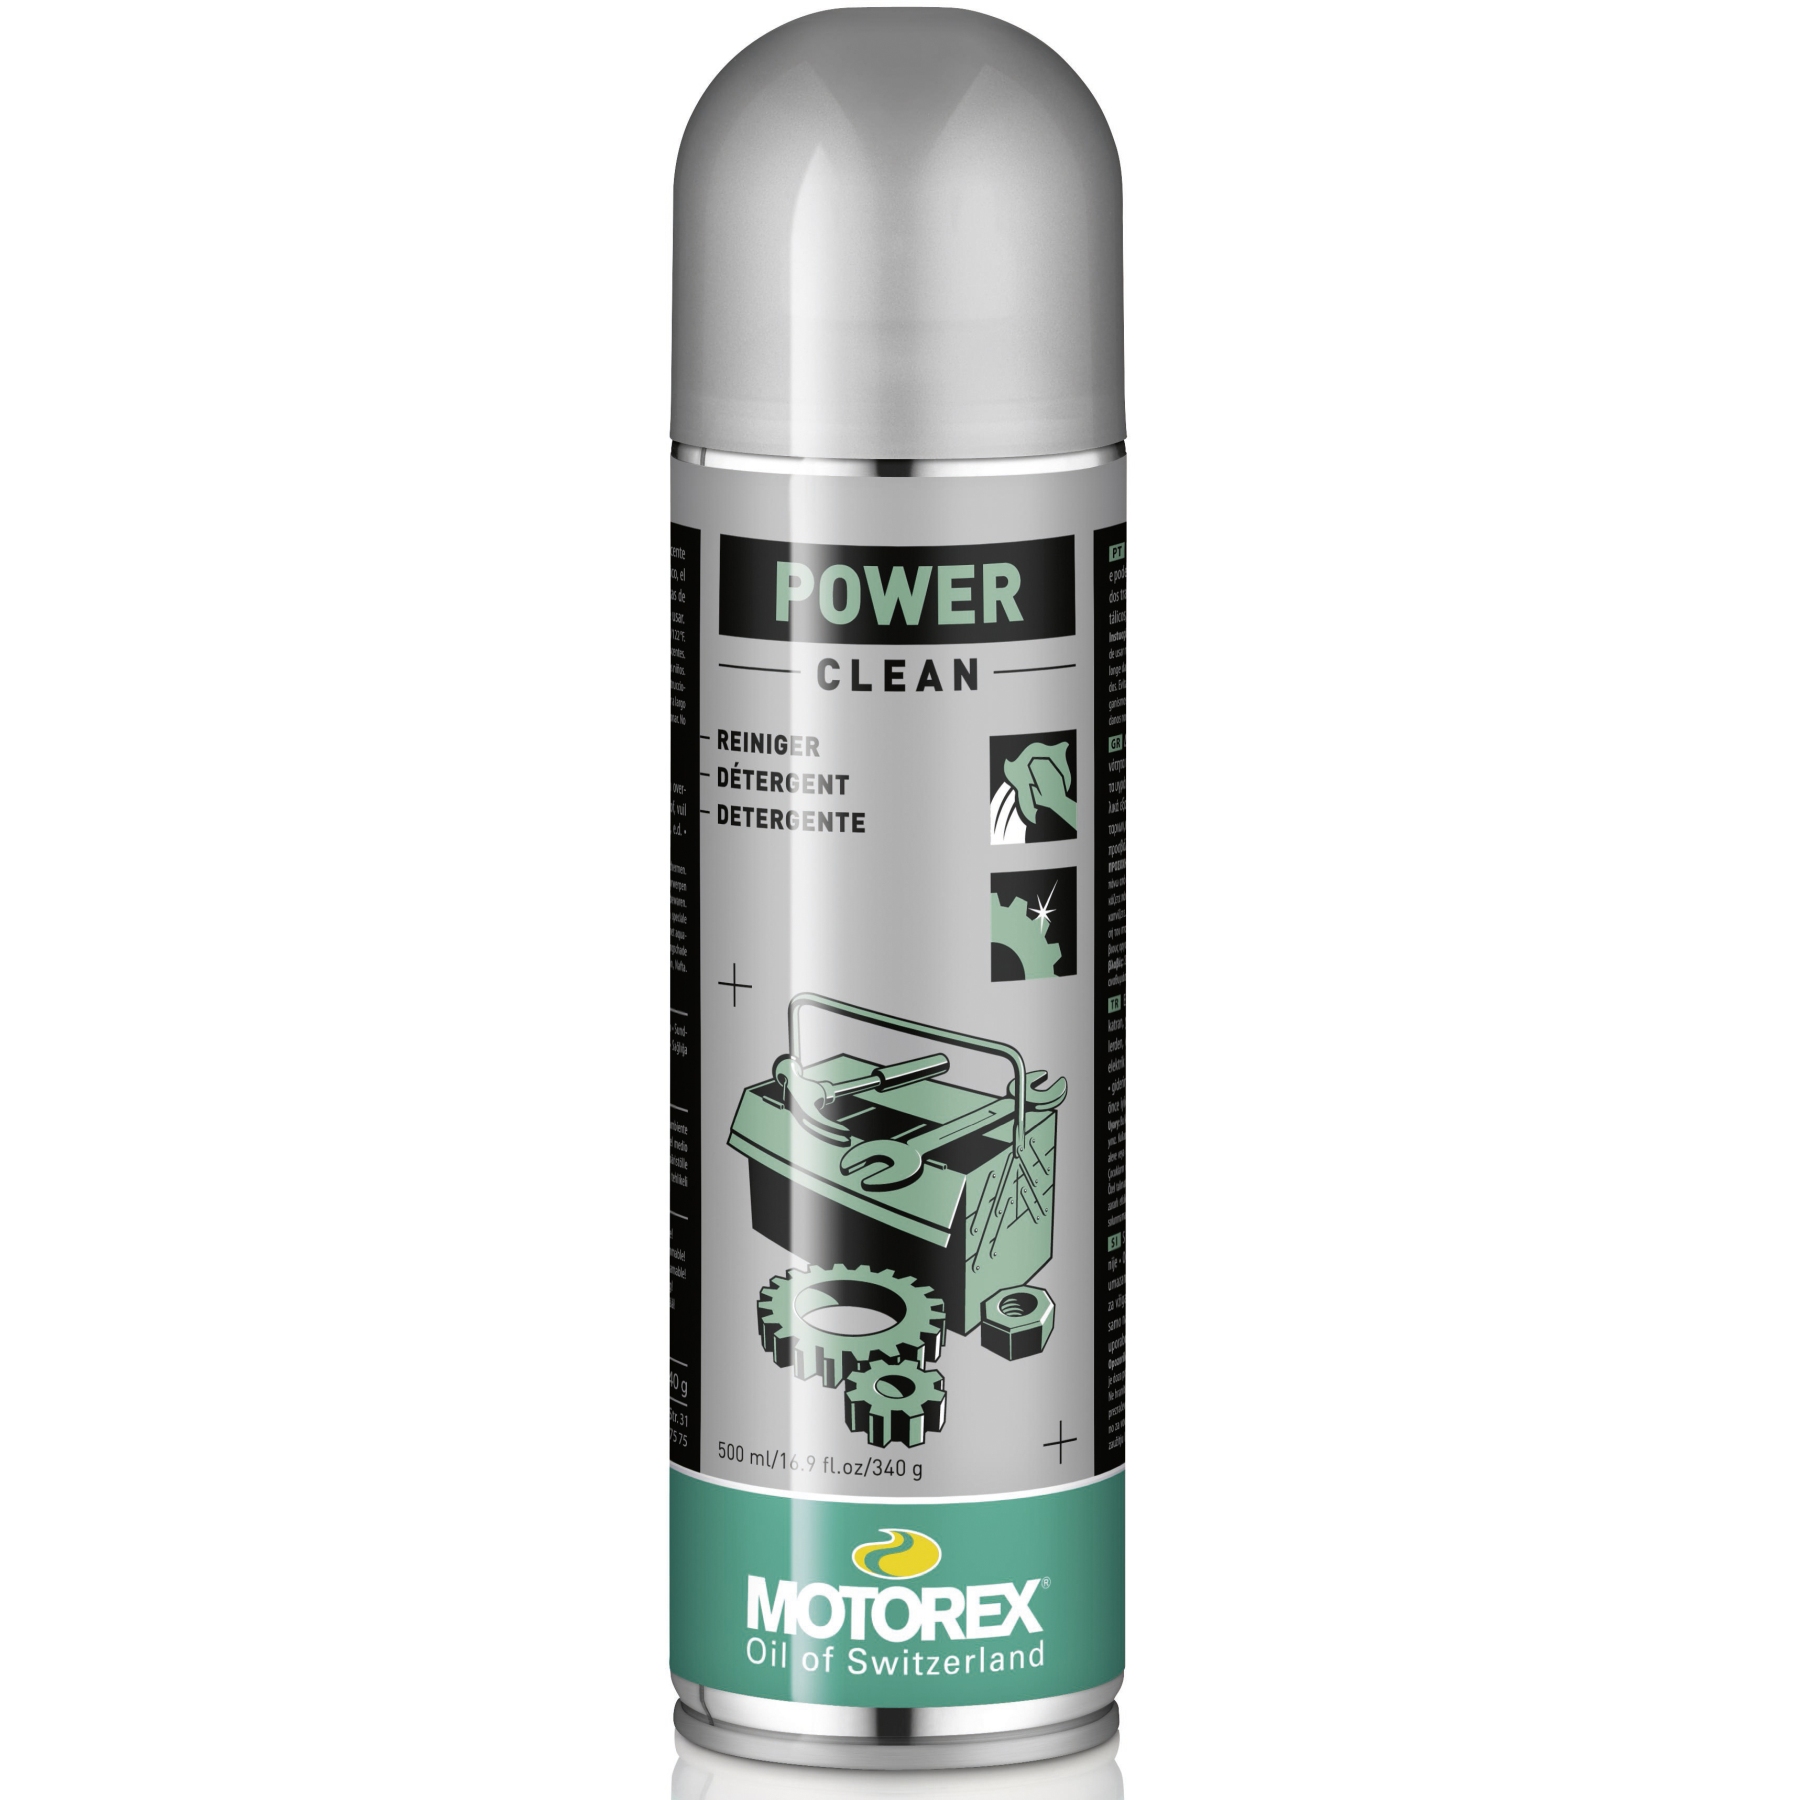 Productfoto van Motorex Power Clean Spray - 500ml